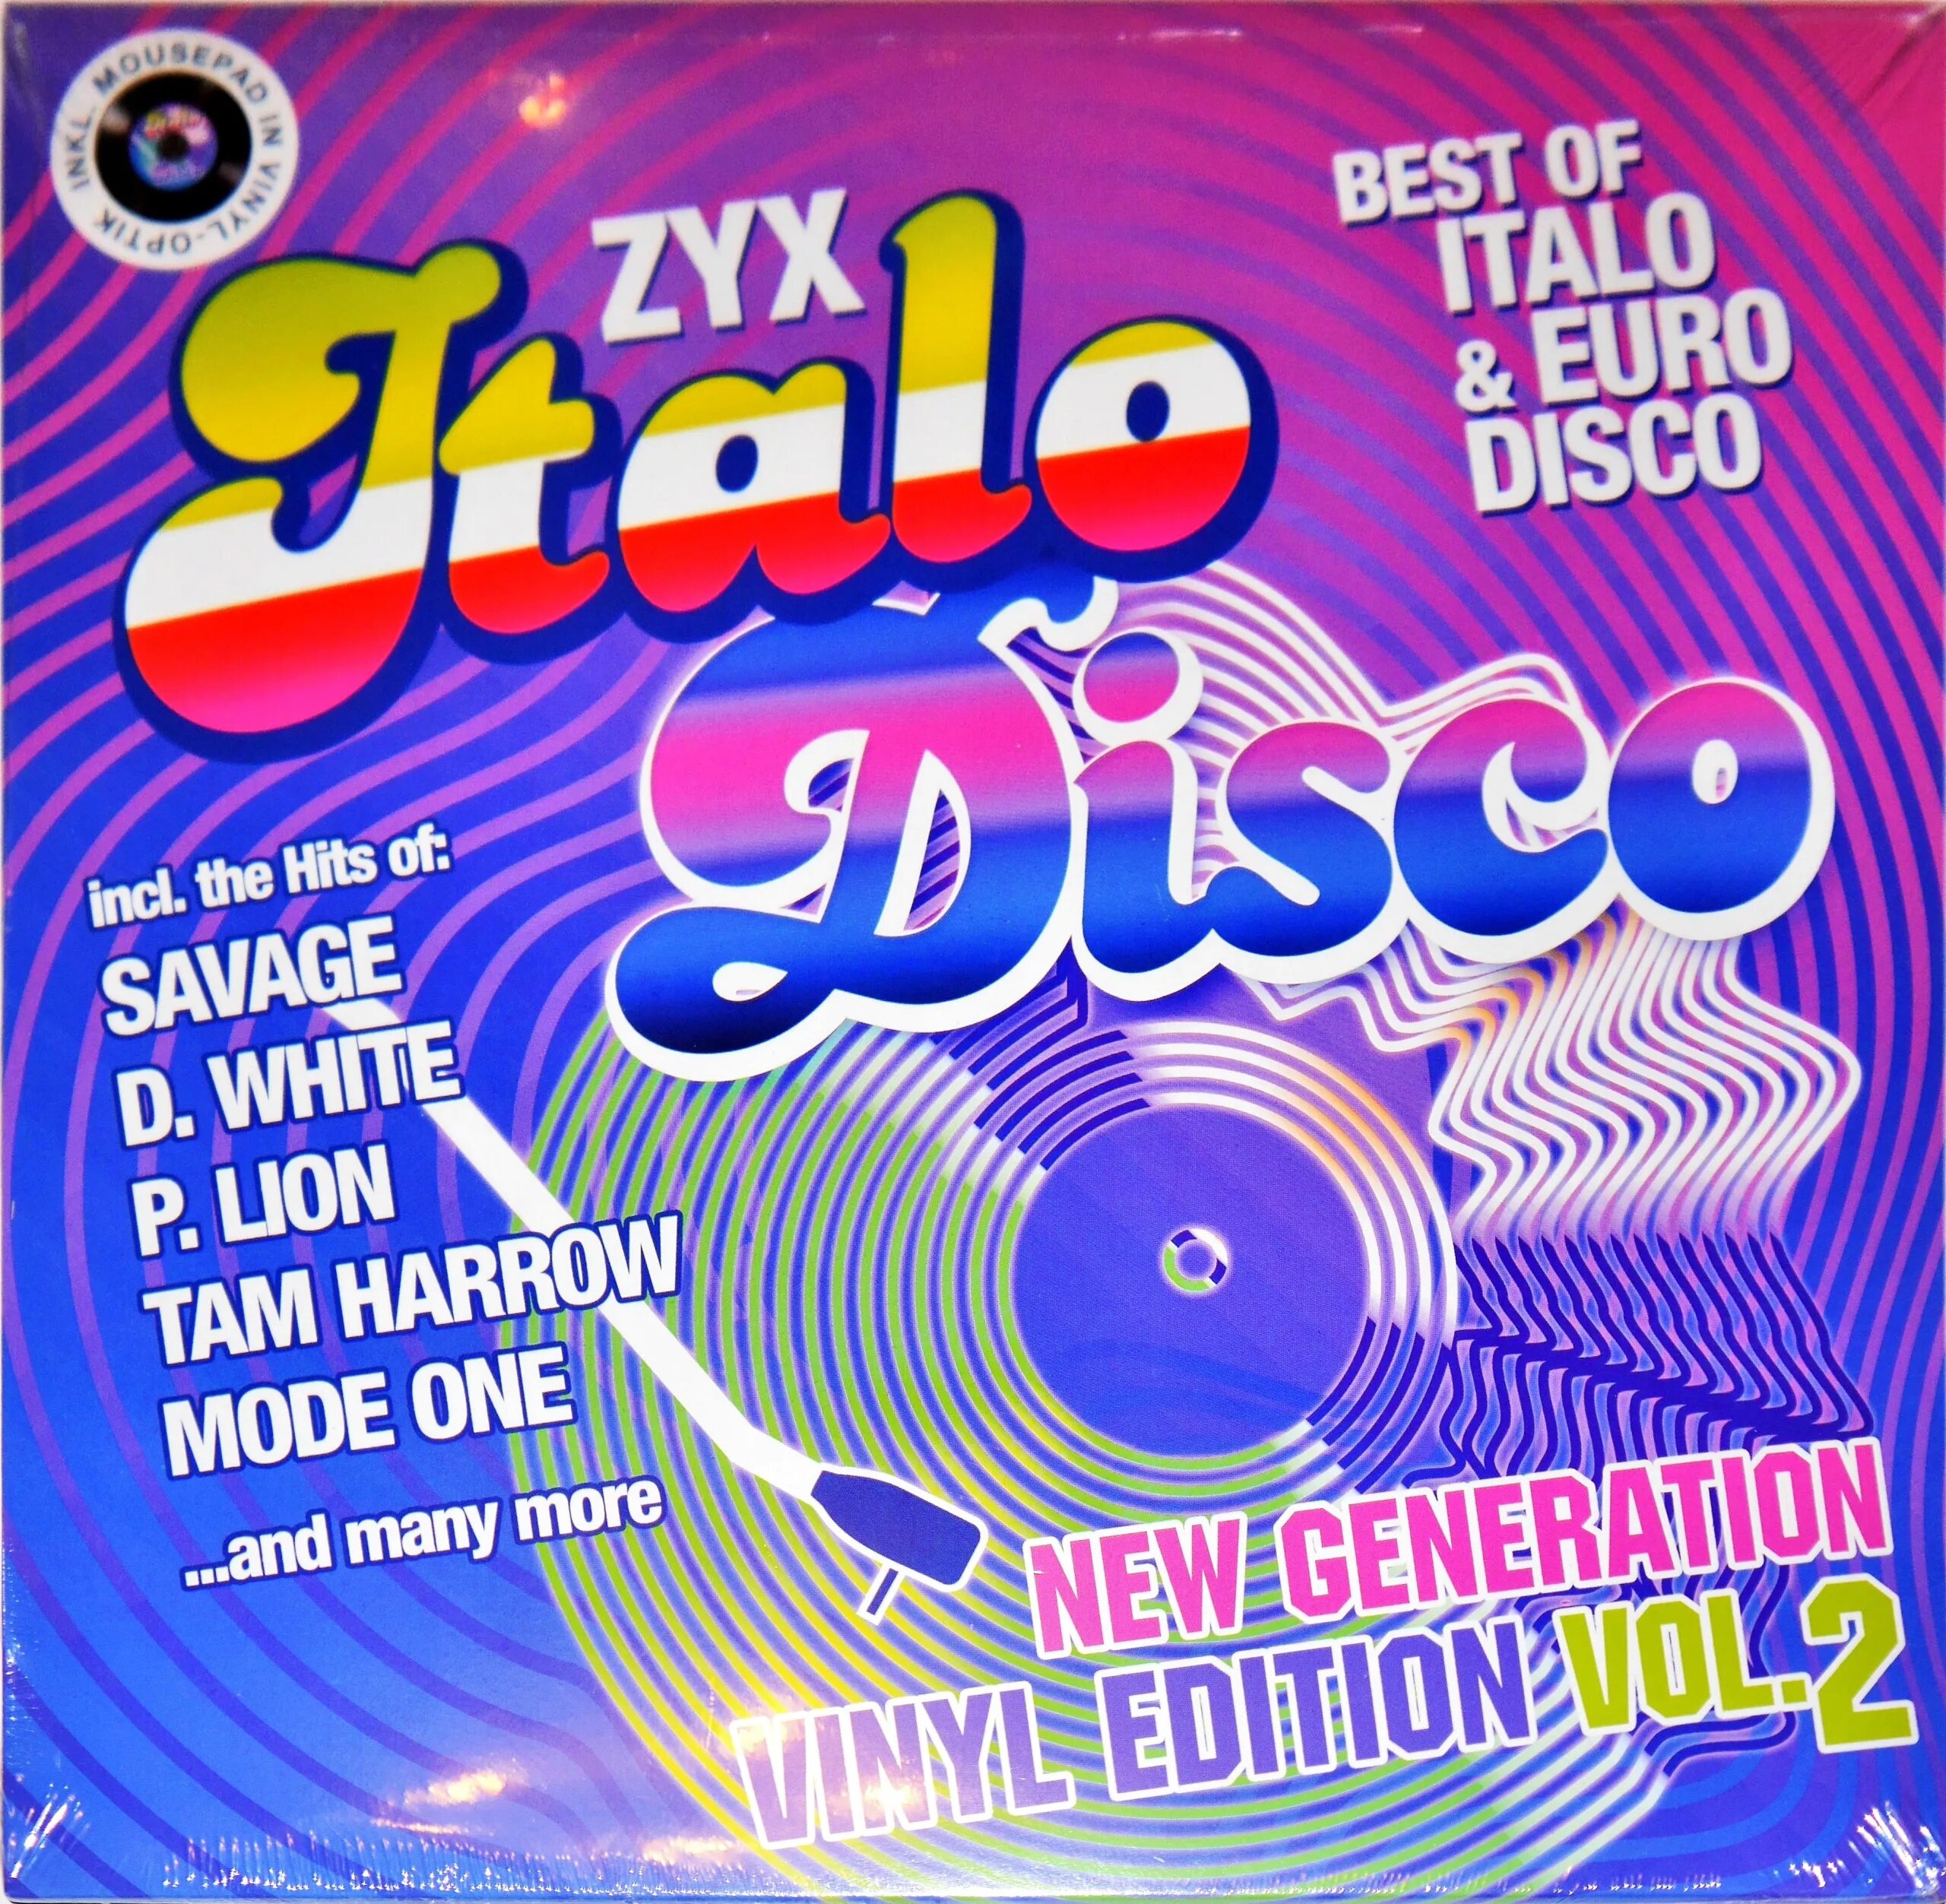 ZYX Italo Disco New Generation Vinyl Edition Vol.5. ZYX Italo Disco New Generation Vol 20. ZYX Italo Disco Hits. ZYX Italo Disco New Generation. New disco hits